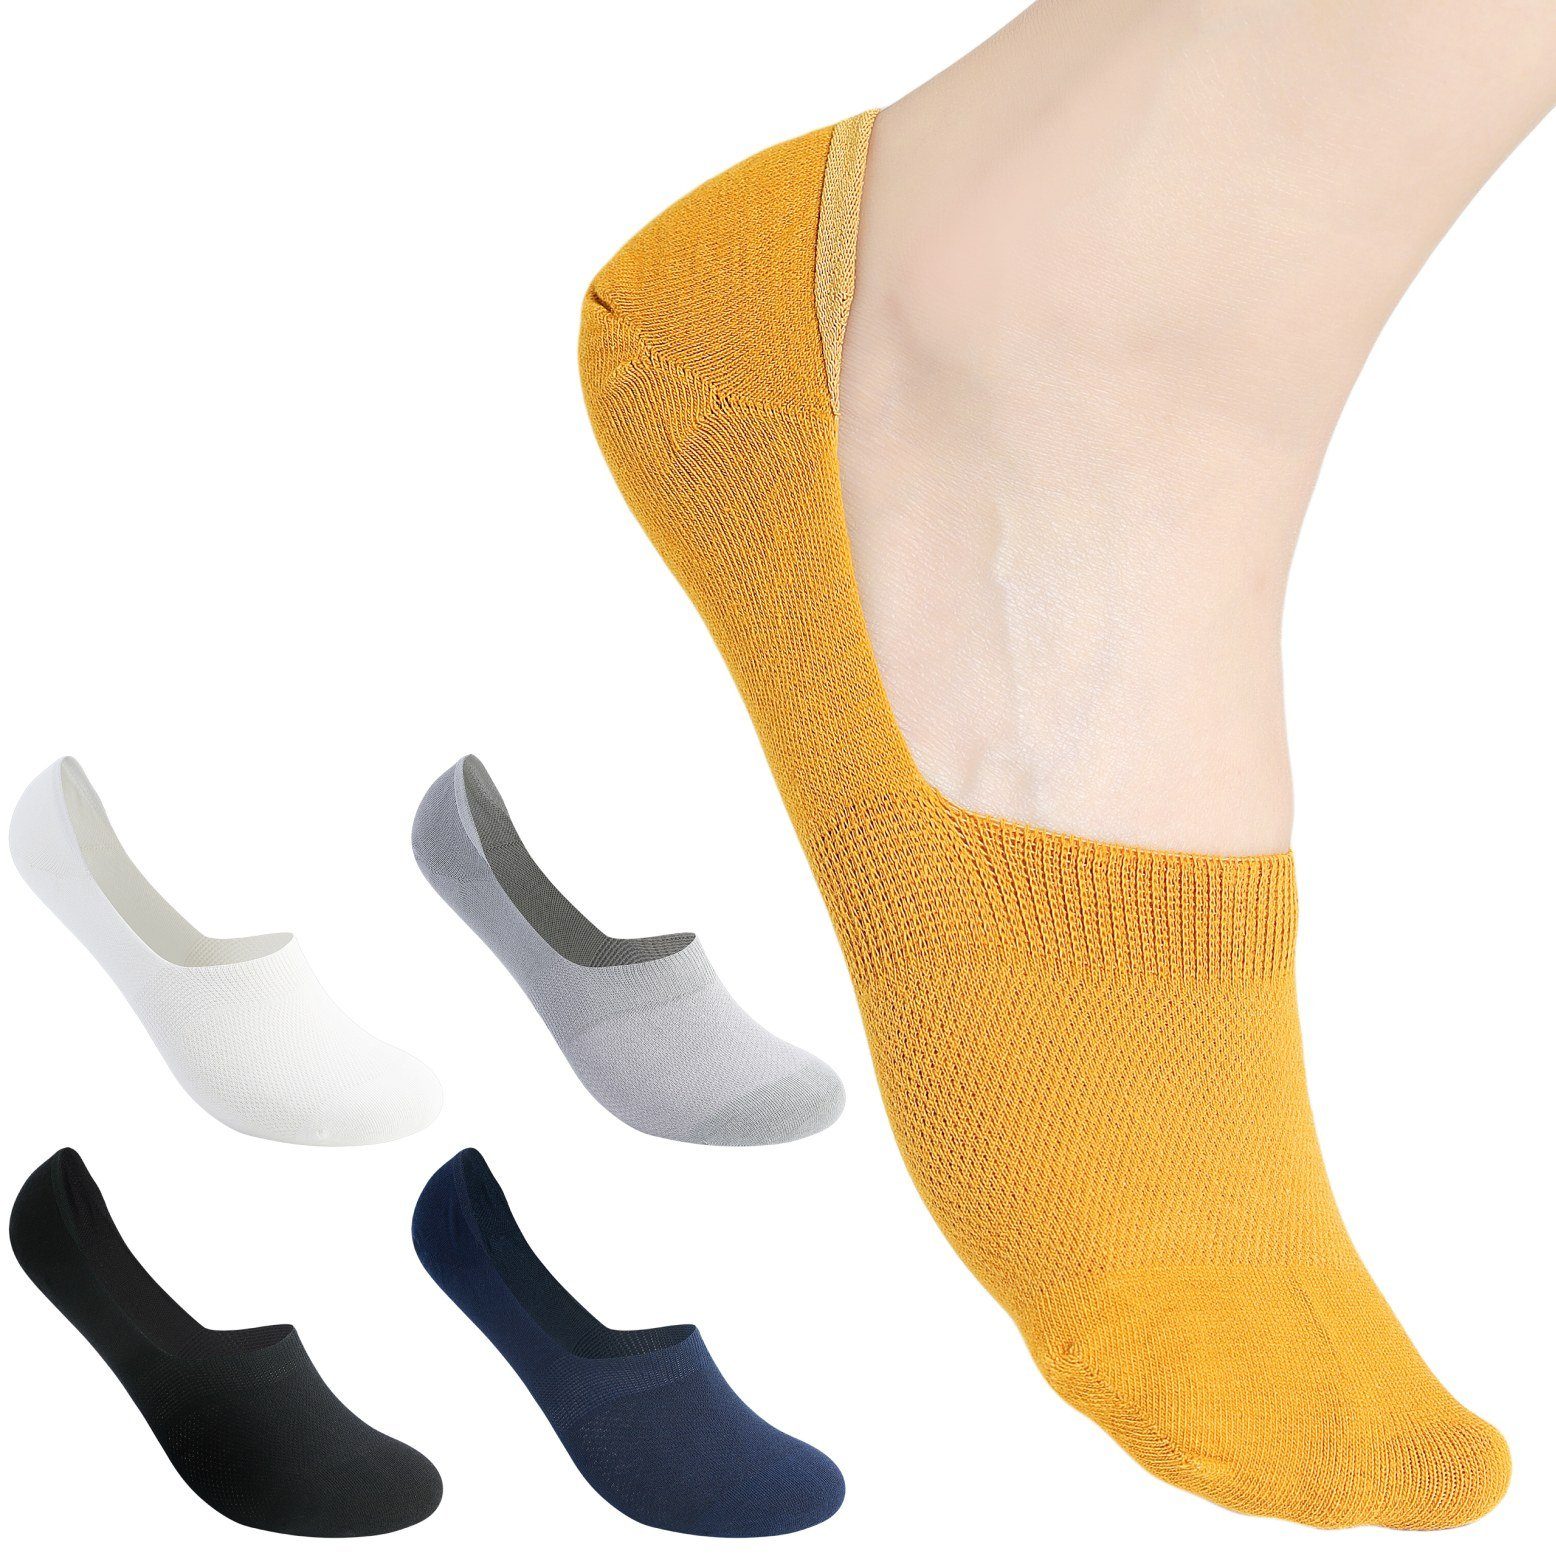 immer Kurzsocken Socken Füßlinge 43-46, 5er Pack, Farbmix 2 (5-Paar) elastisch, atmungsaktiv, klimaregulierend